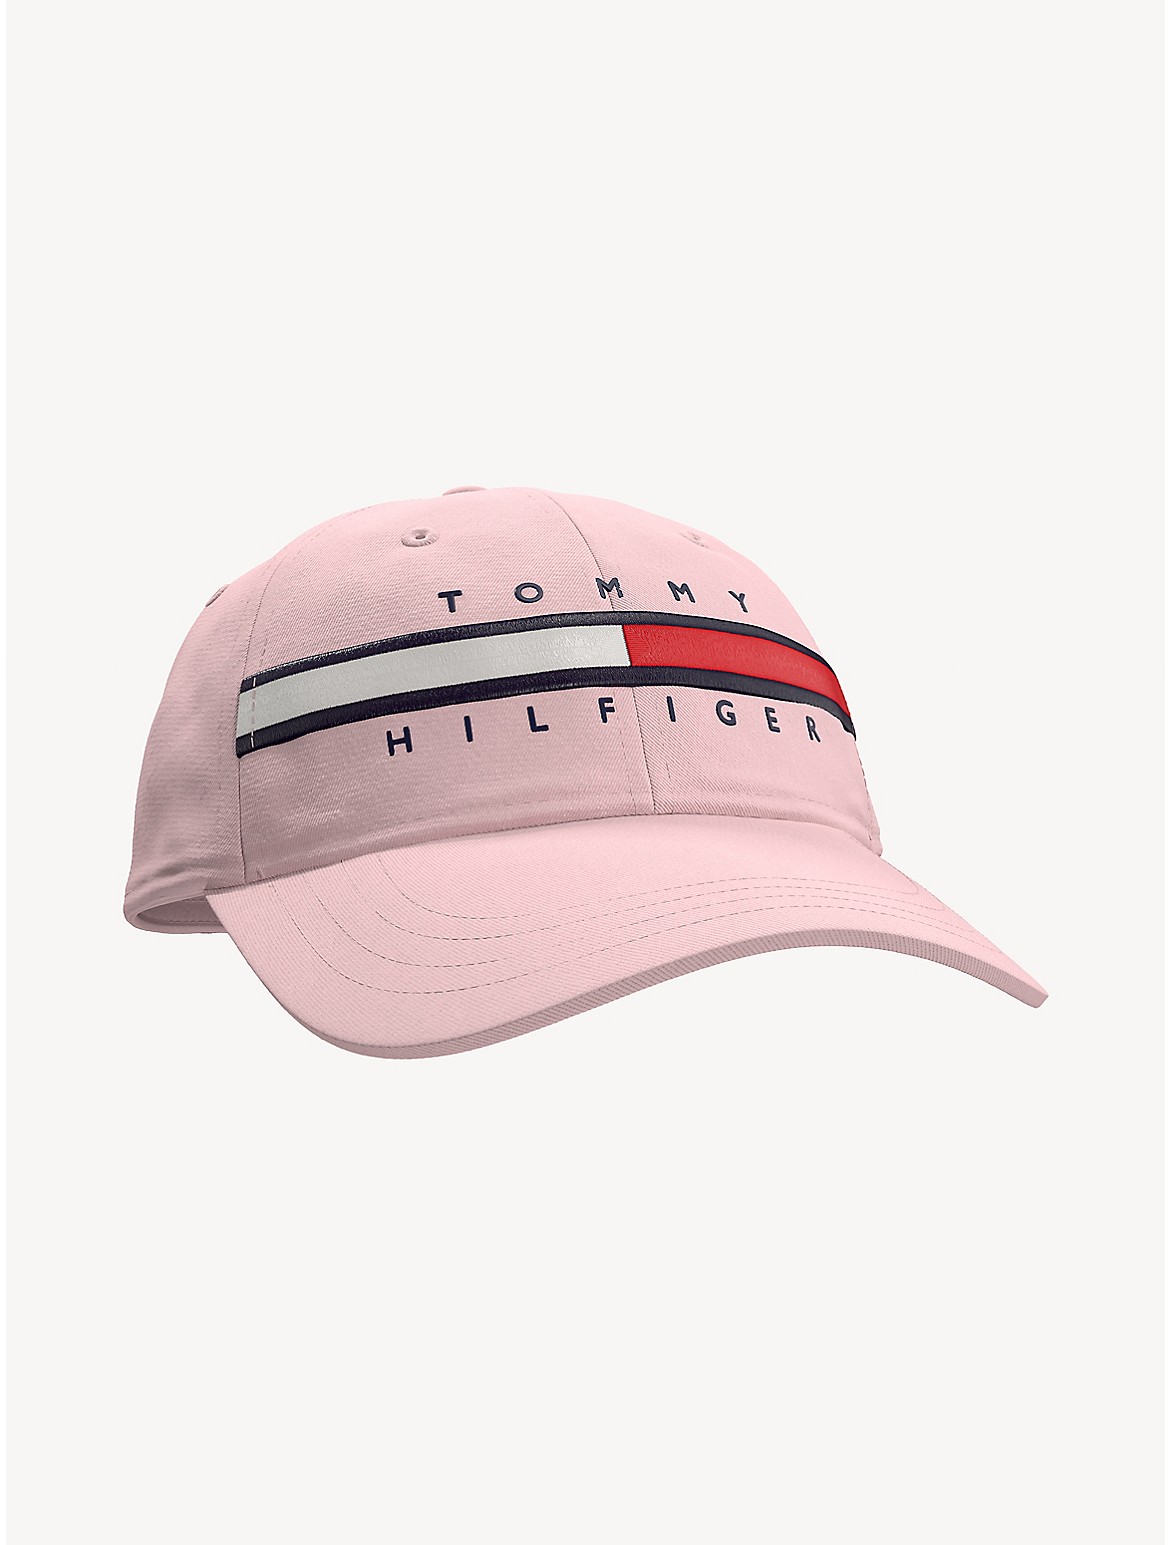 Tommy Hilfiger Babies' Flag Stripe Logo Baseball Cap - Pink - 2-3